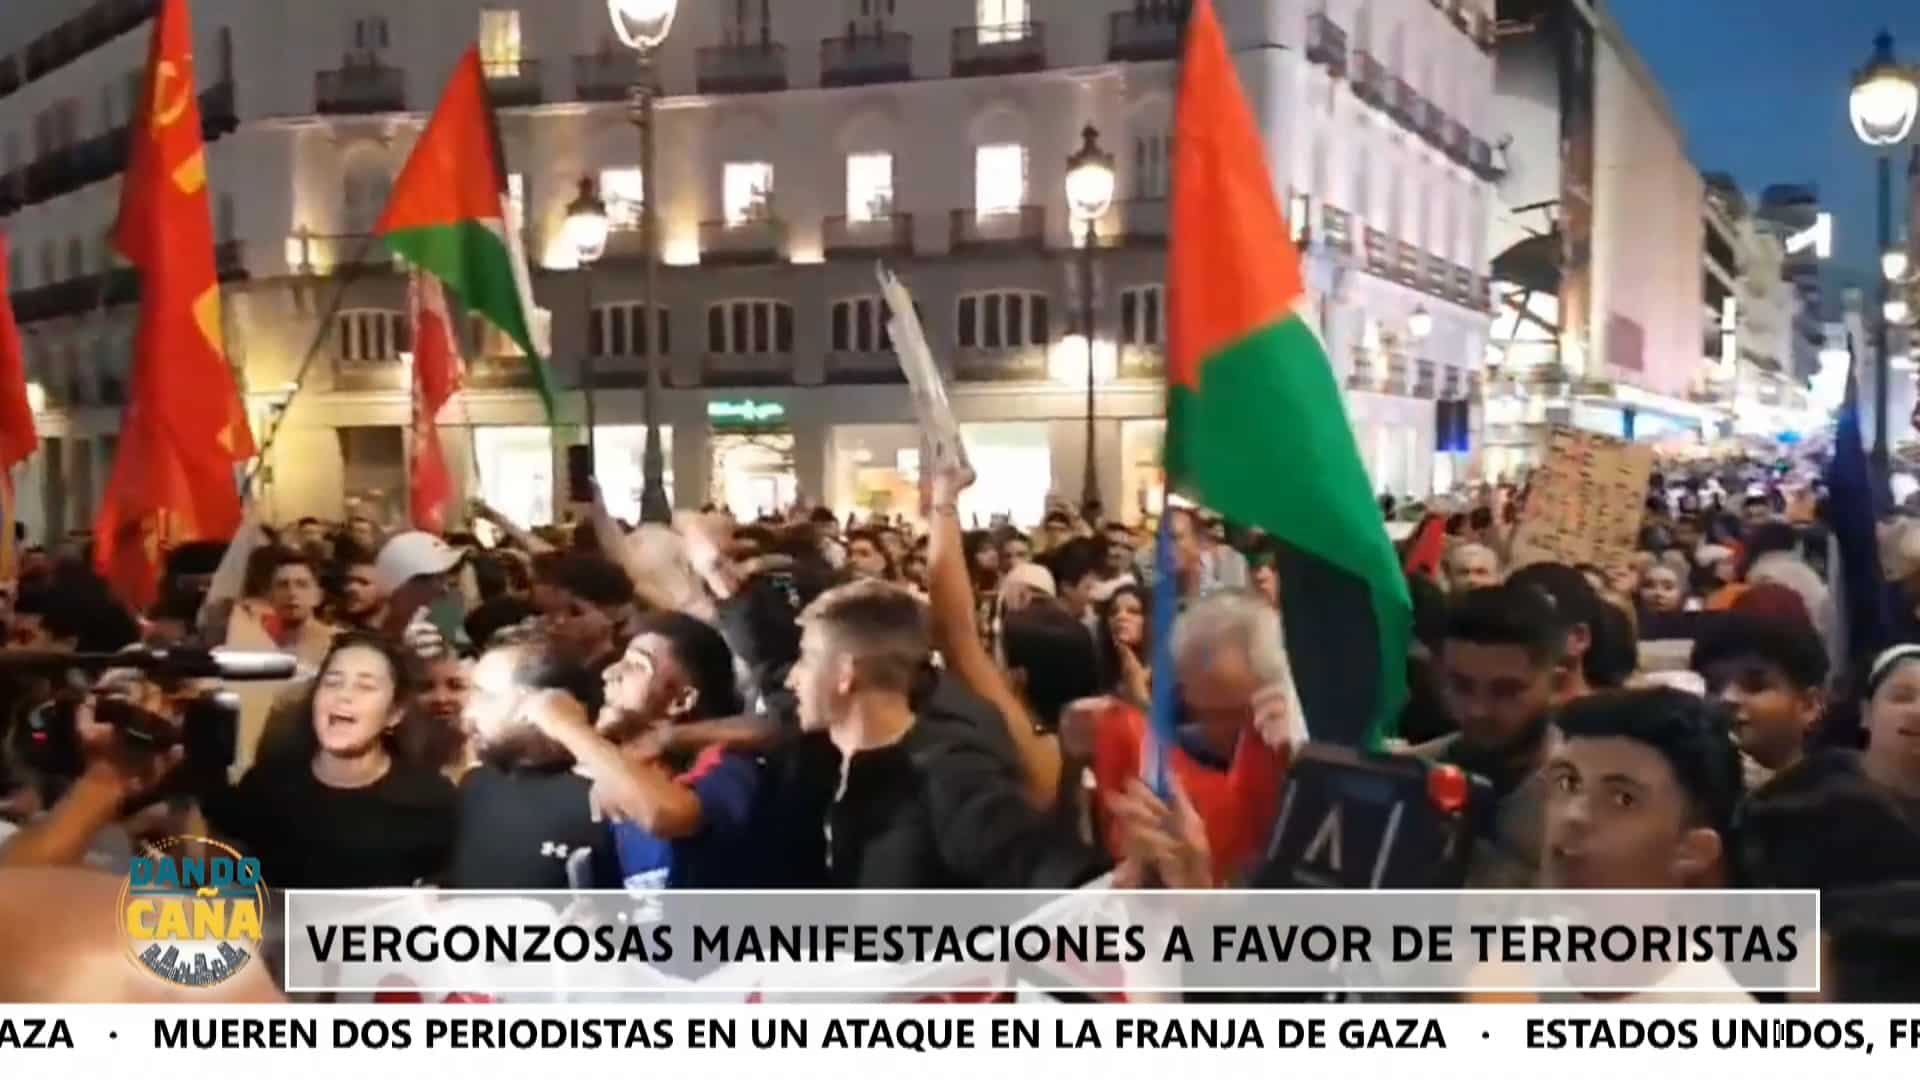 Vergonzosas manifestaciones en España capitaneadas por IU y Podemos a favor del terrorismo